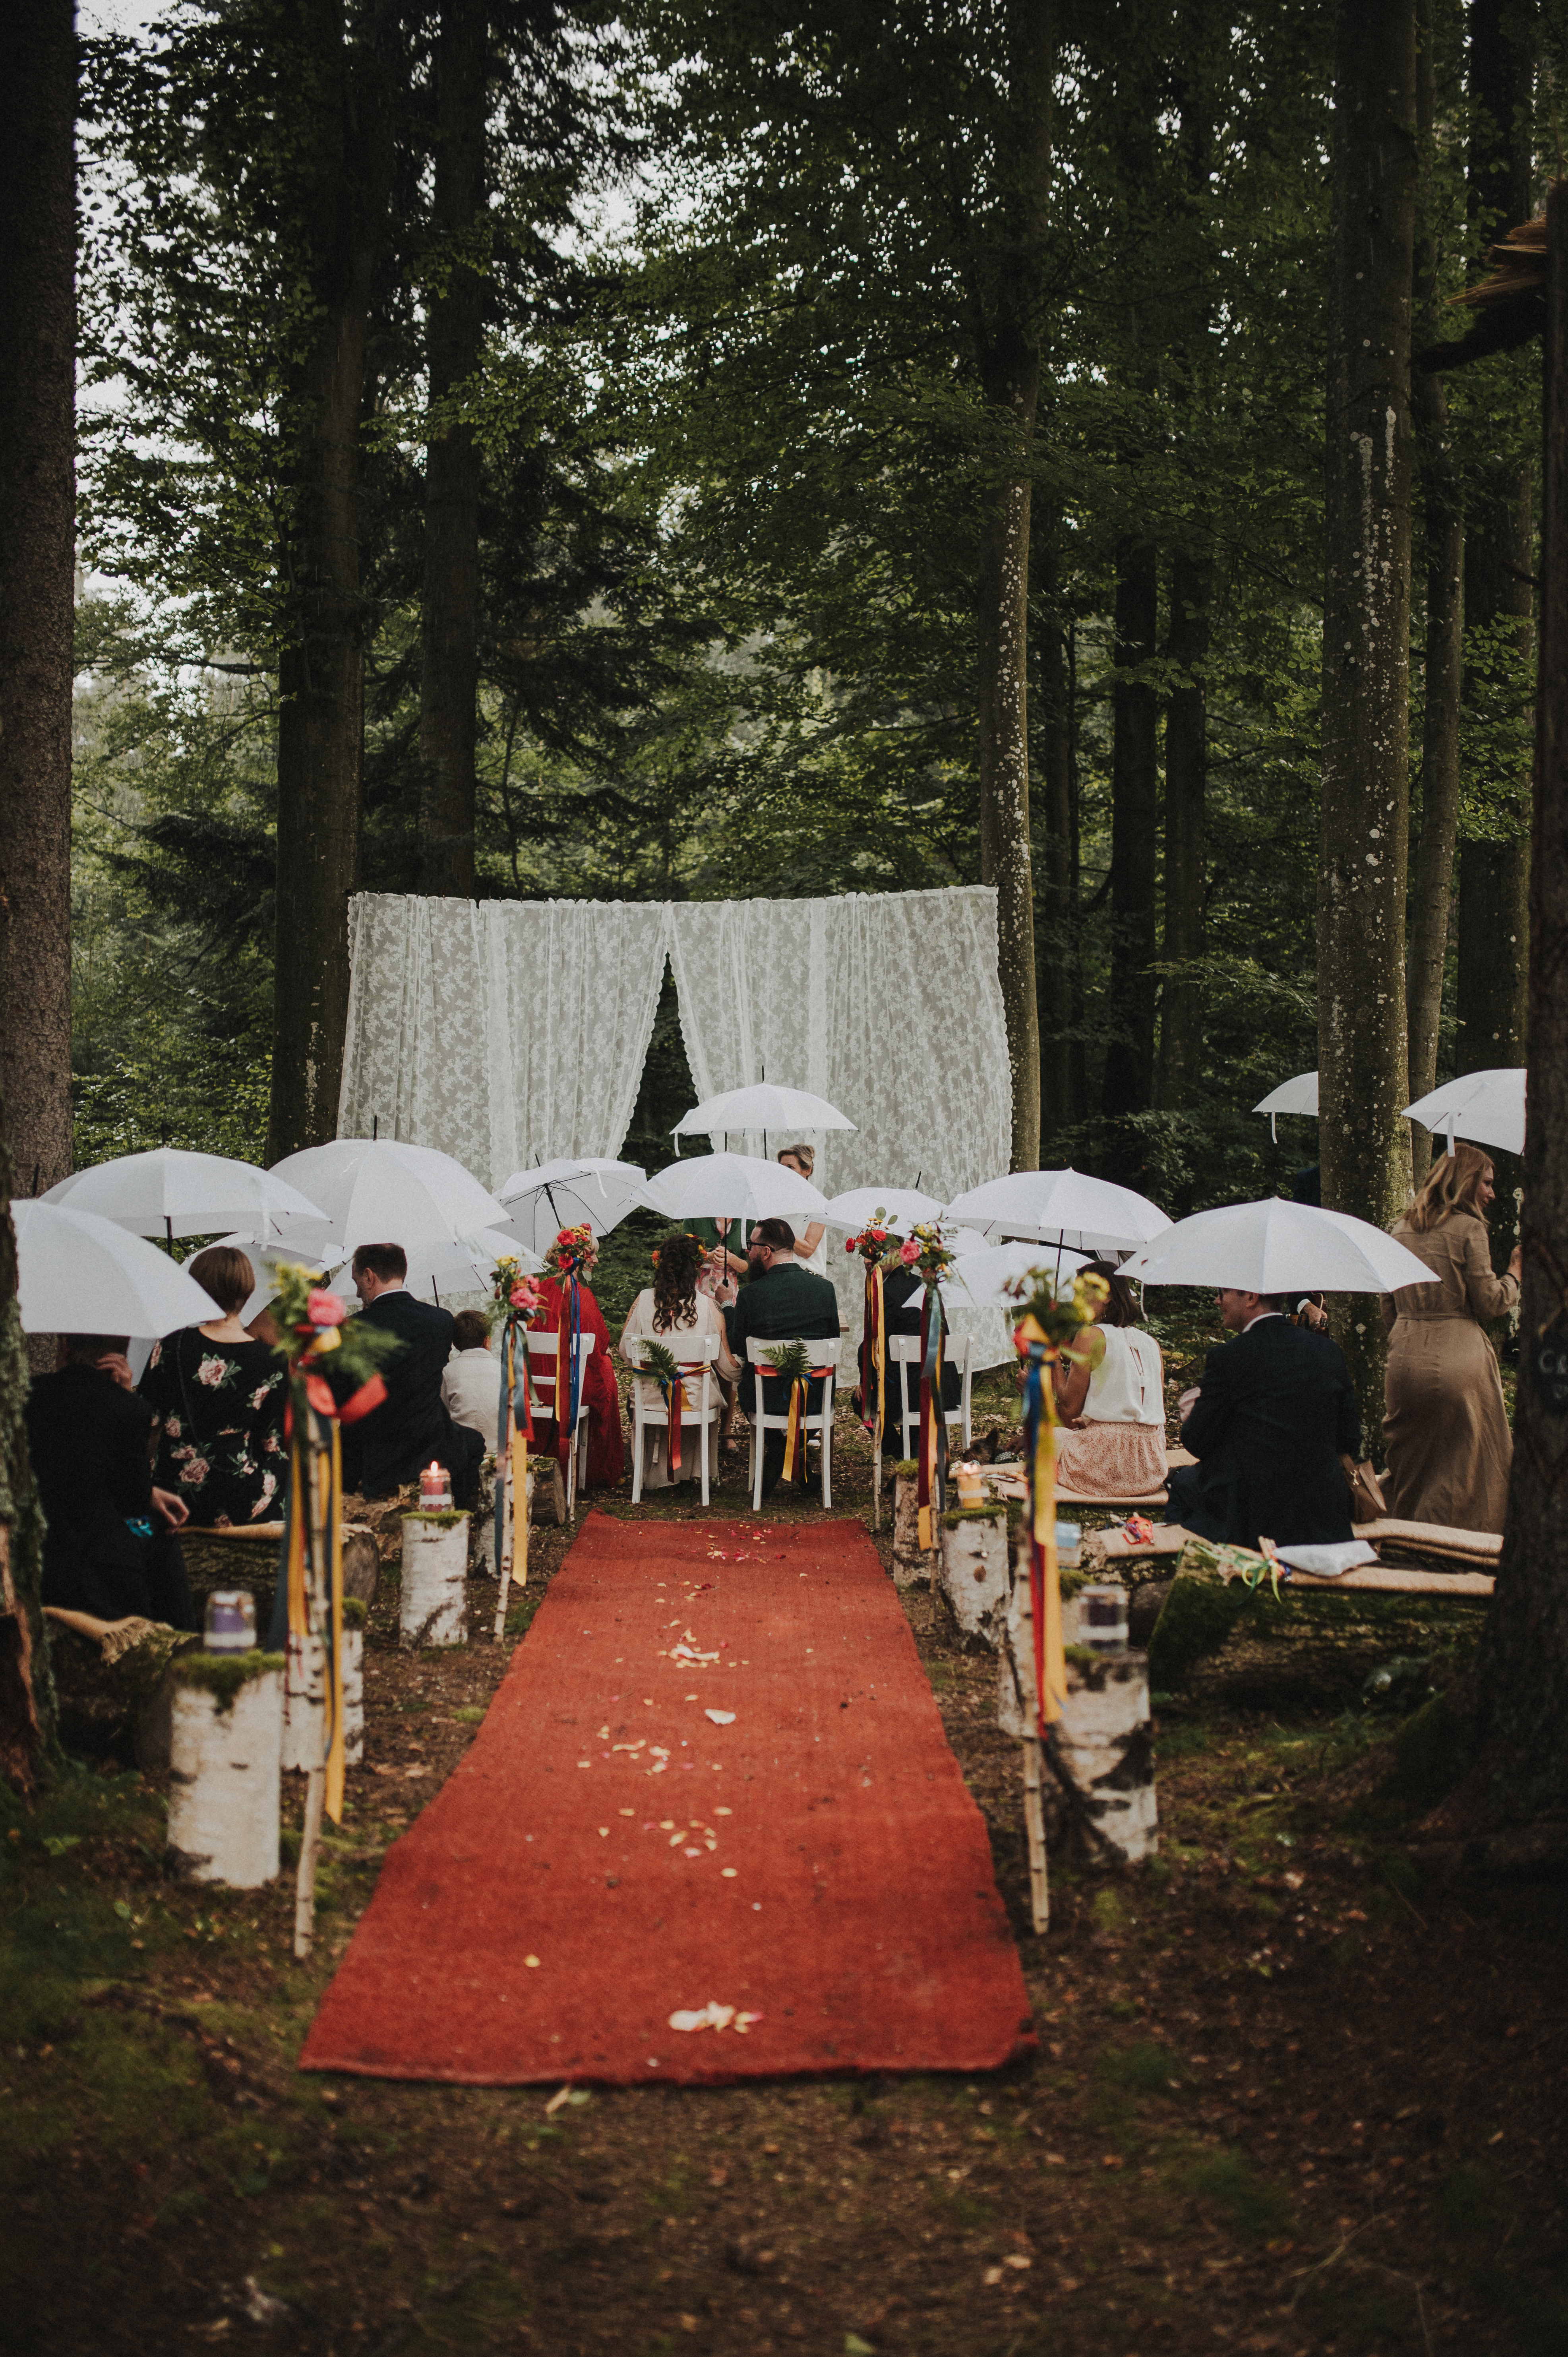 Freie Trauung im Regen auf einer Waldlichtung | Strauß & Fliege